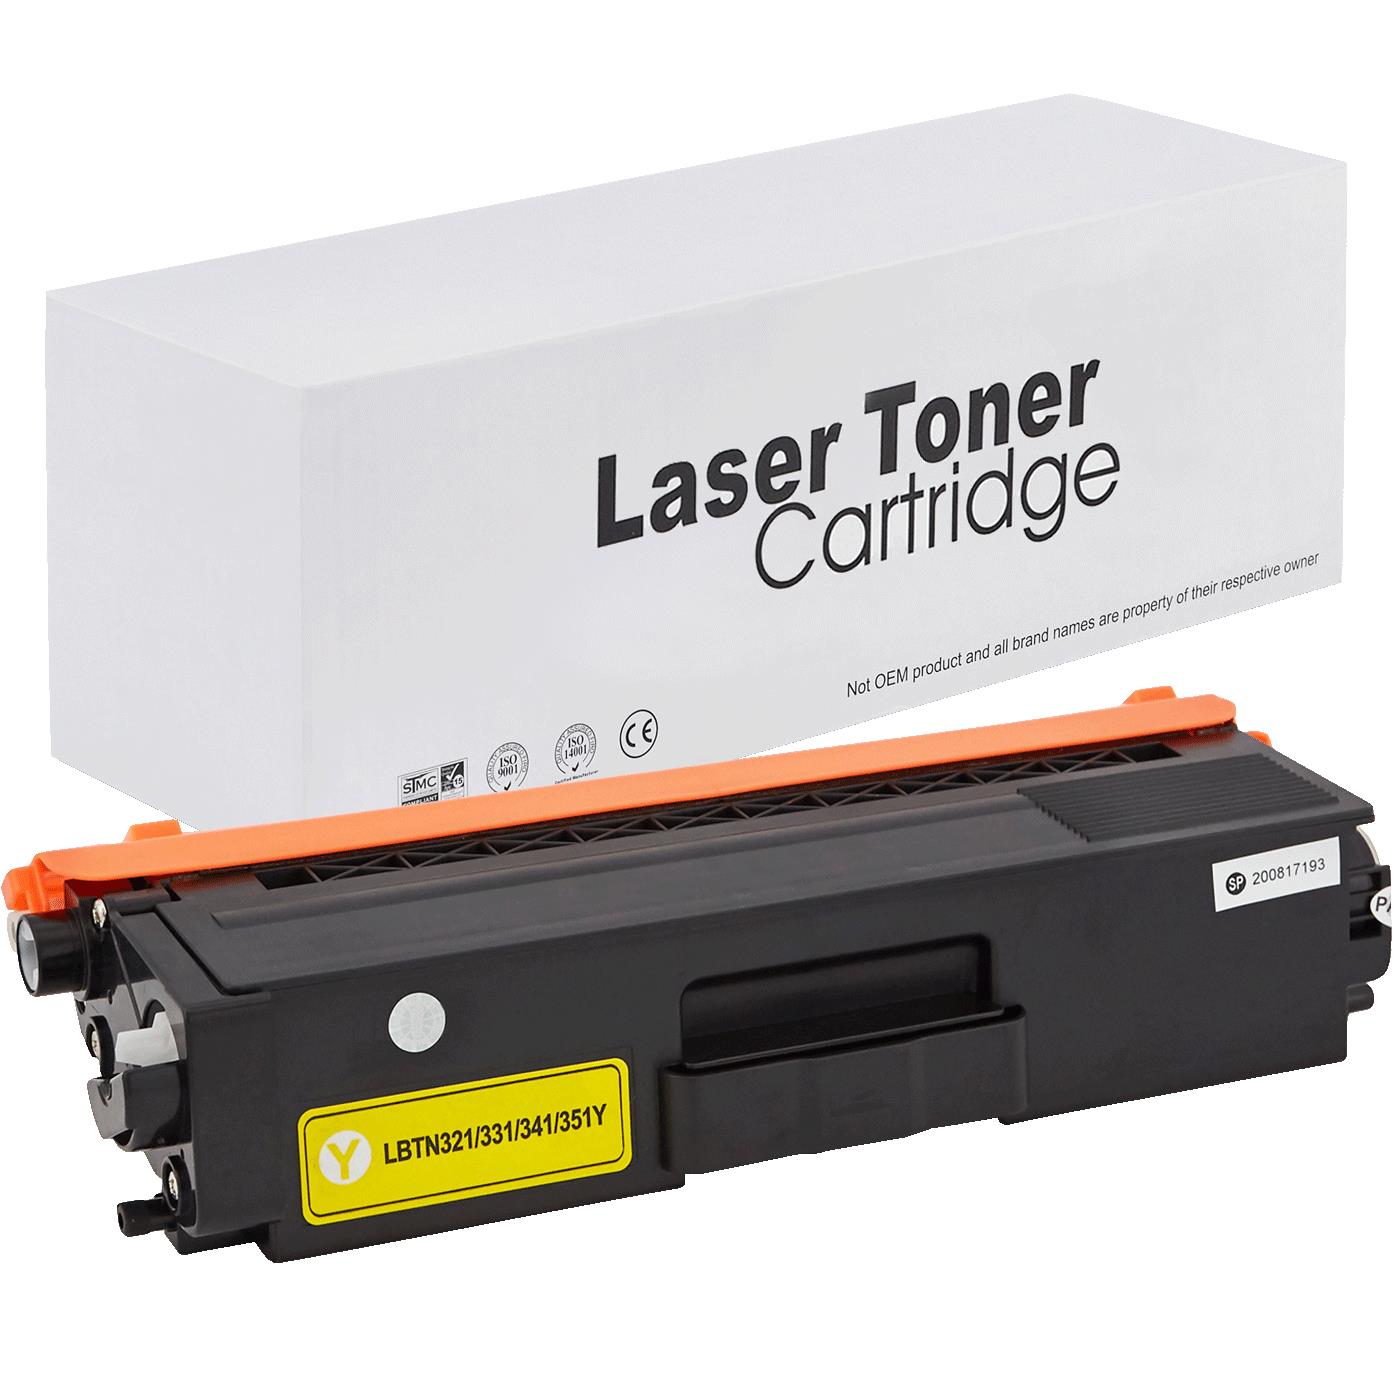 съвместима тонер касета за принтери и печатащи устройства на Brother DCP-L 8450 CDW Toner BR-321Y | TN321Y. Ниски цени, прецизно изпълнение, високо качество.